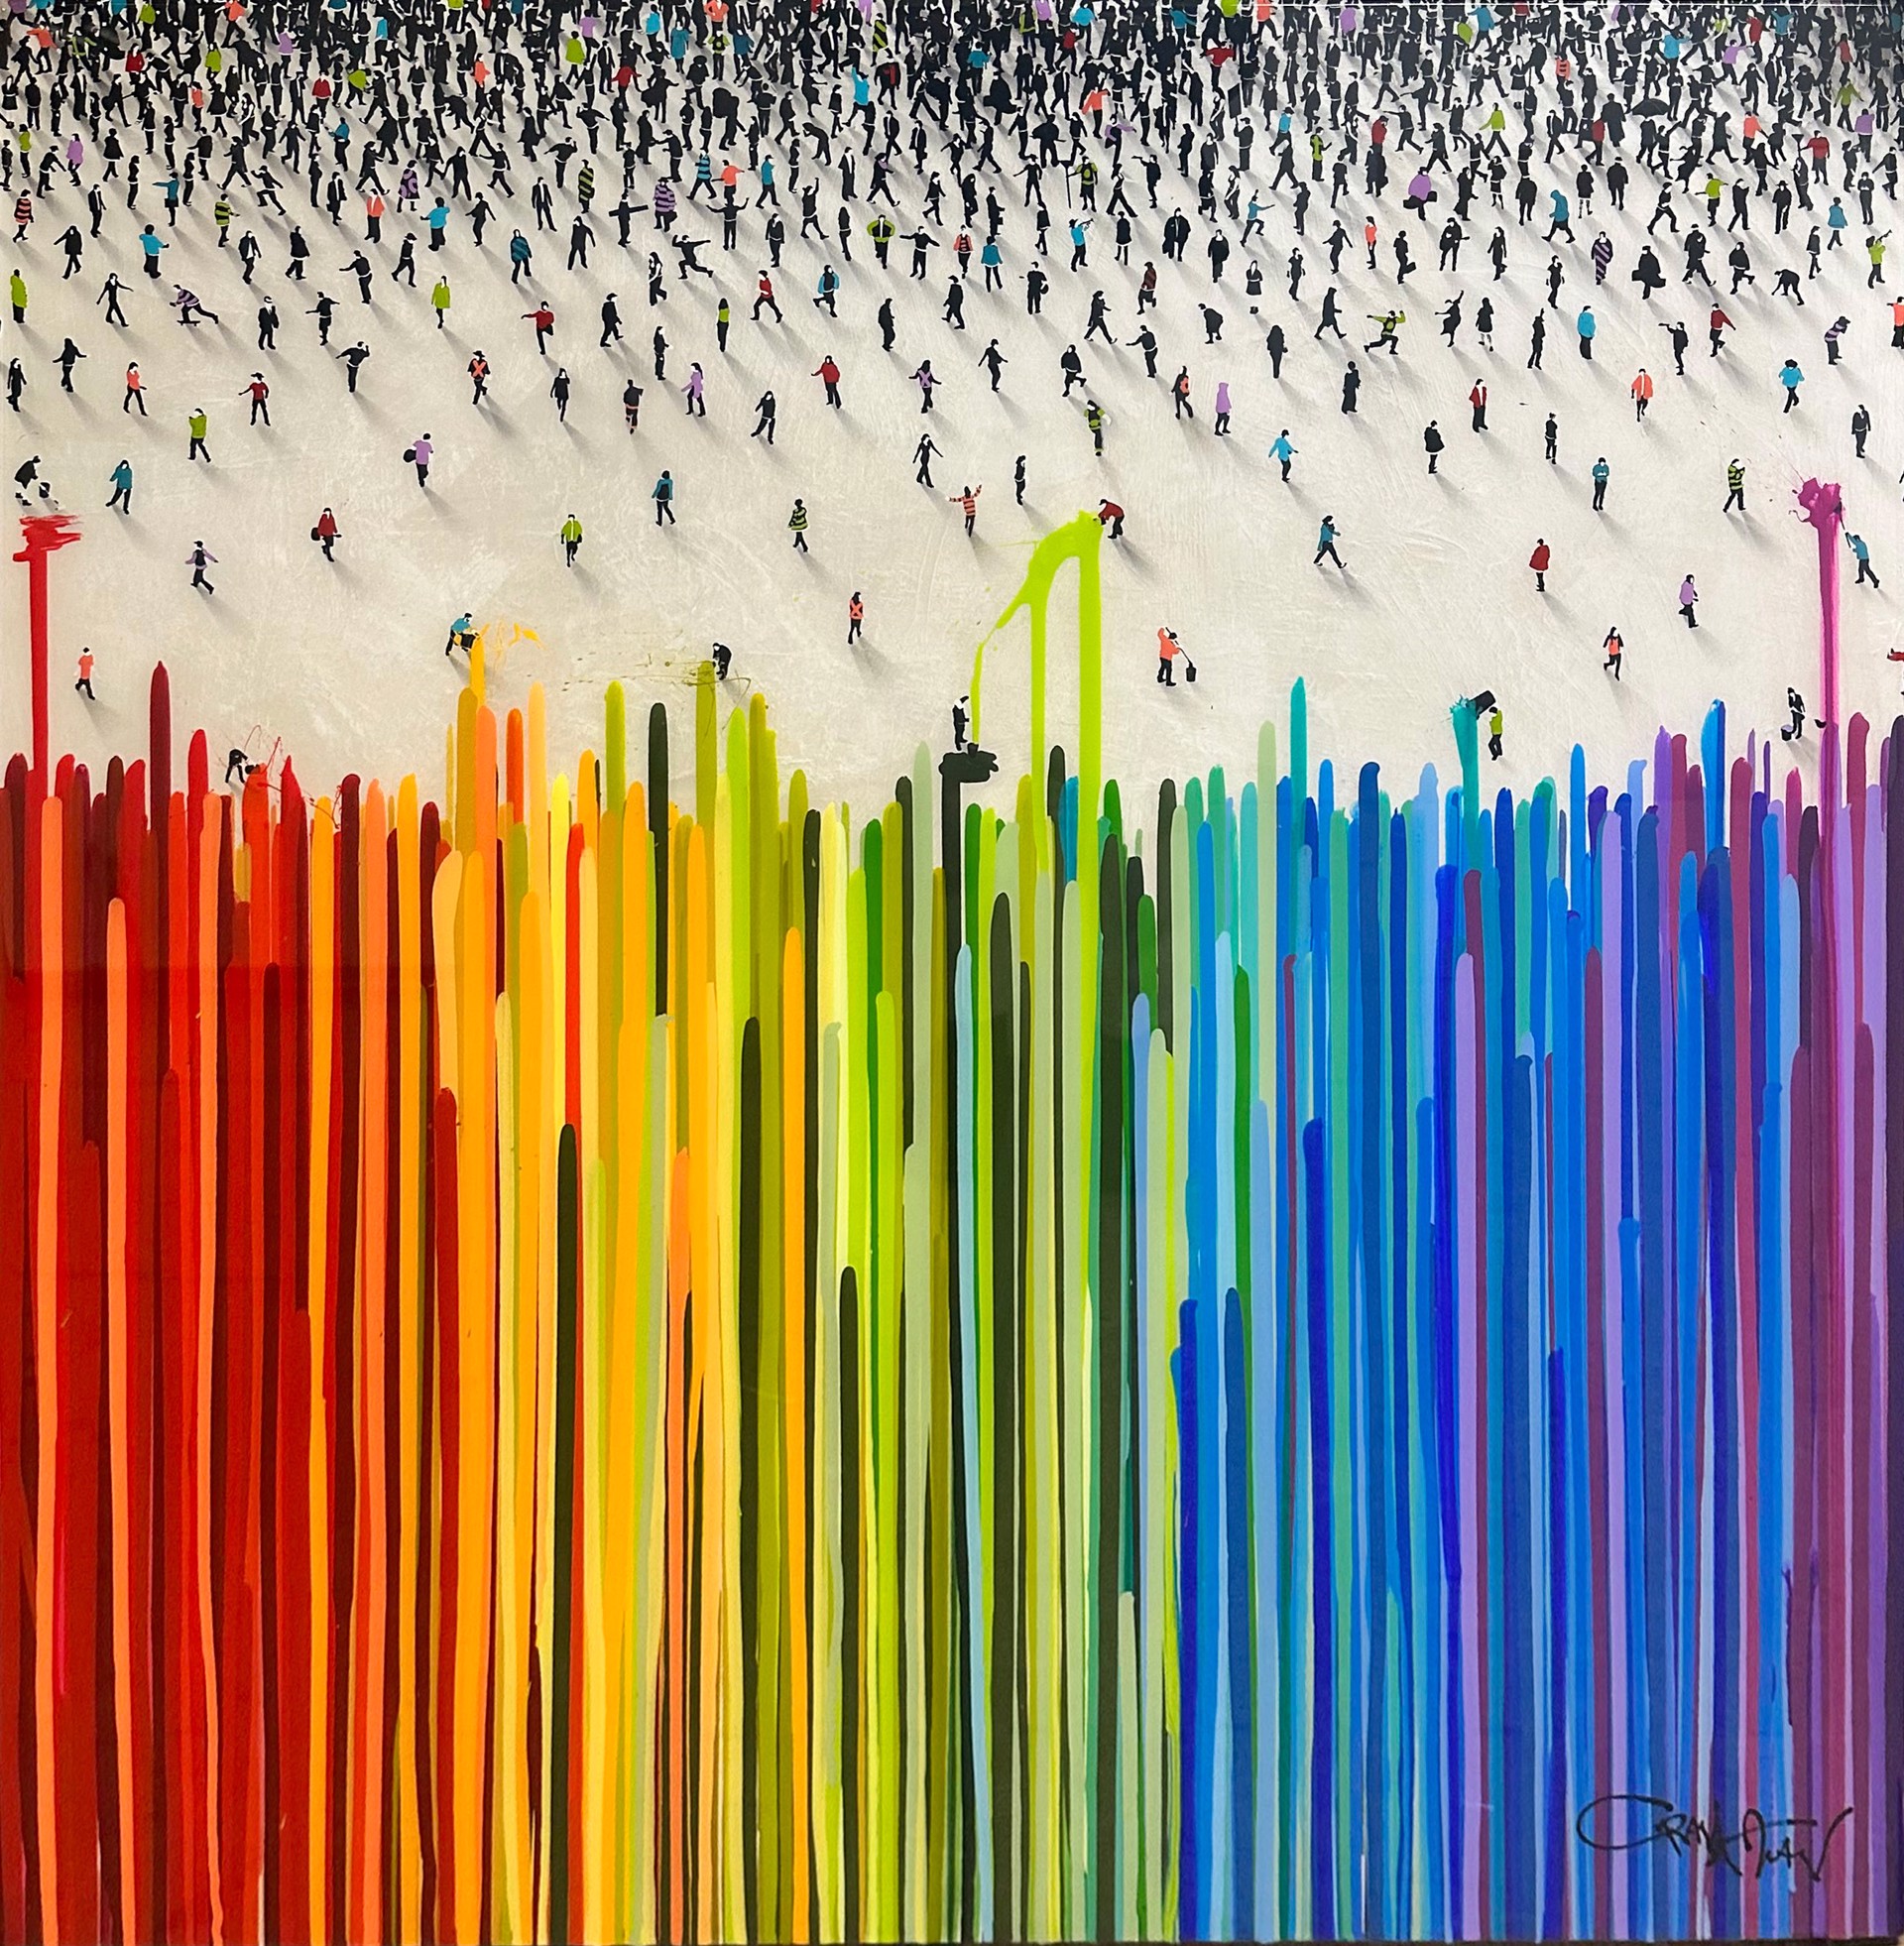 Spectrum (Commission) by Craig Alan, Populus Commission